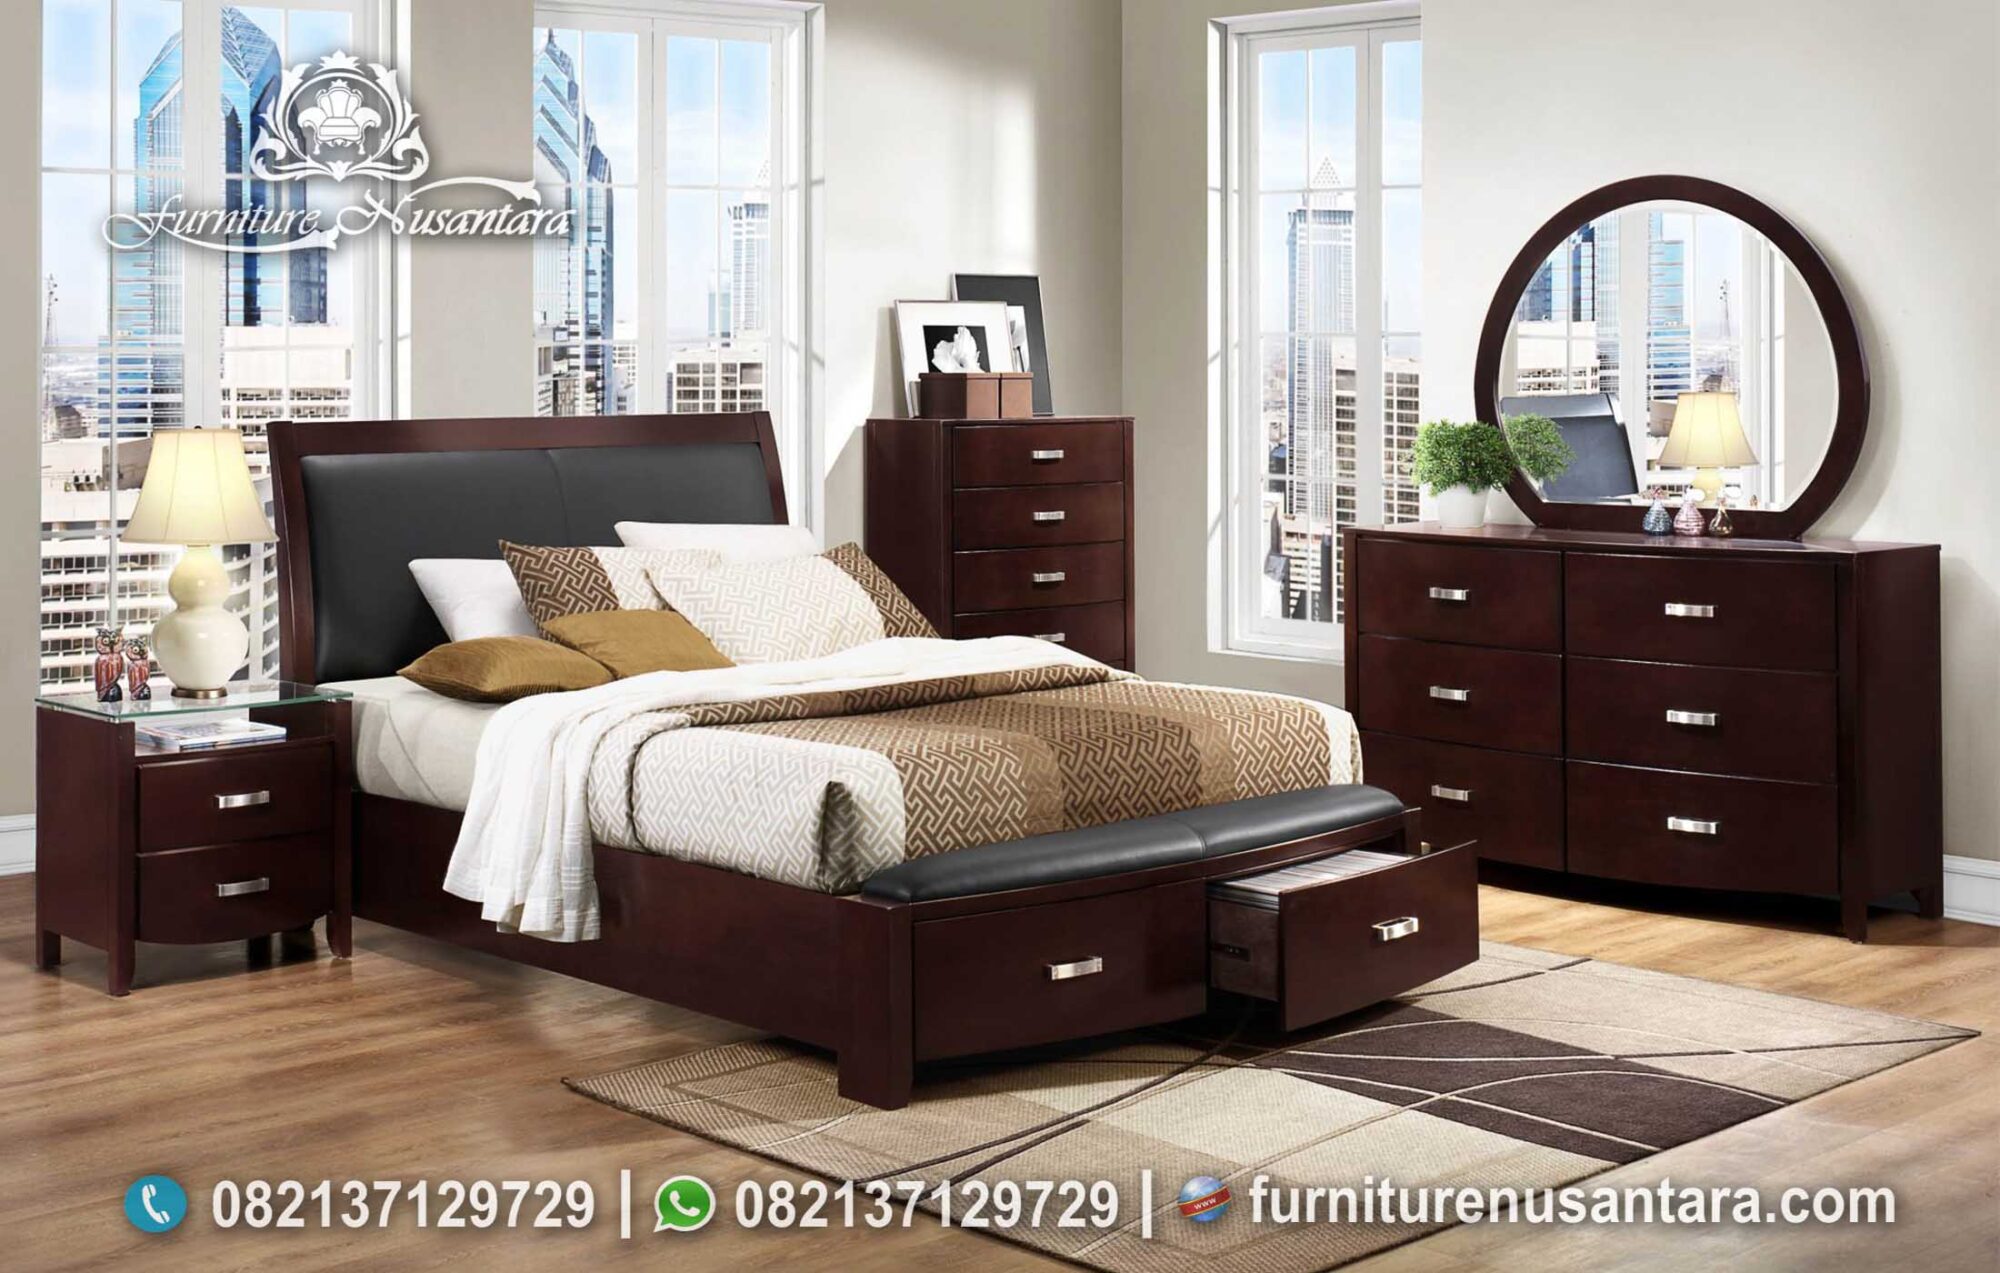 Kamar Minimalis Modern Model Terbaru KS-202, Furniture Nusantara